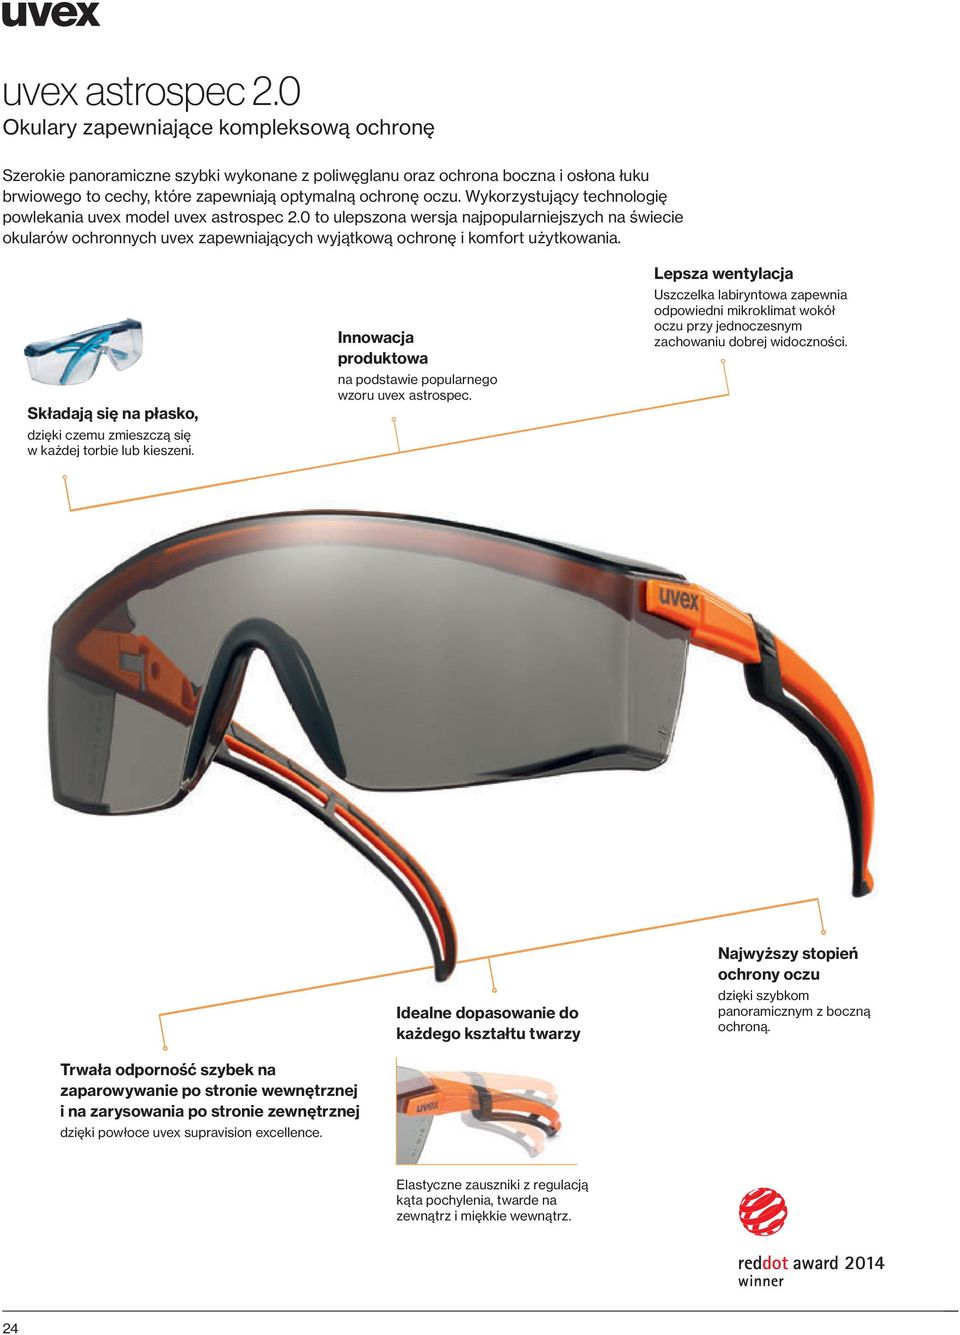 Wykorzystujący technologię powlekania uvex model 0 to ulepszona wersja najpopularniejszych na świecie okularów ochronnych uvex zapewniających wyjątkową ochronę i komfort użytkowania.